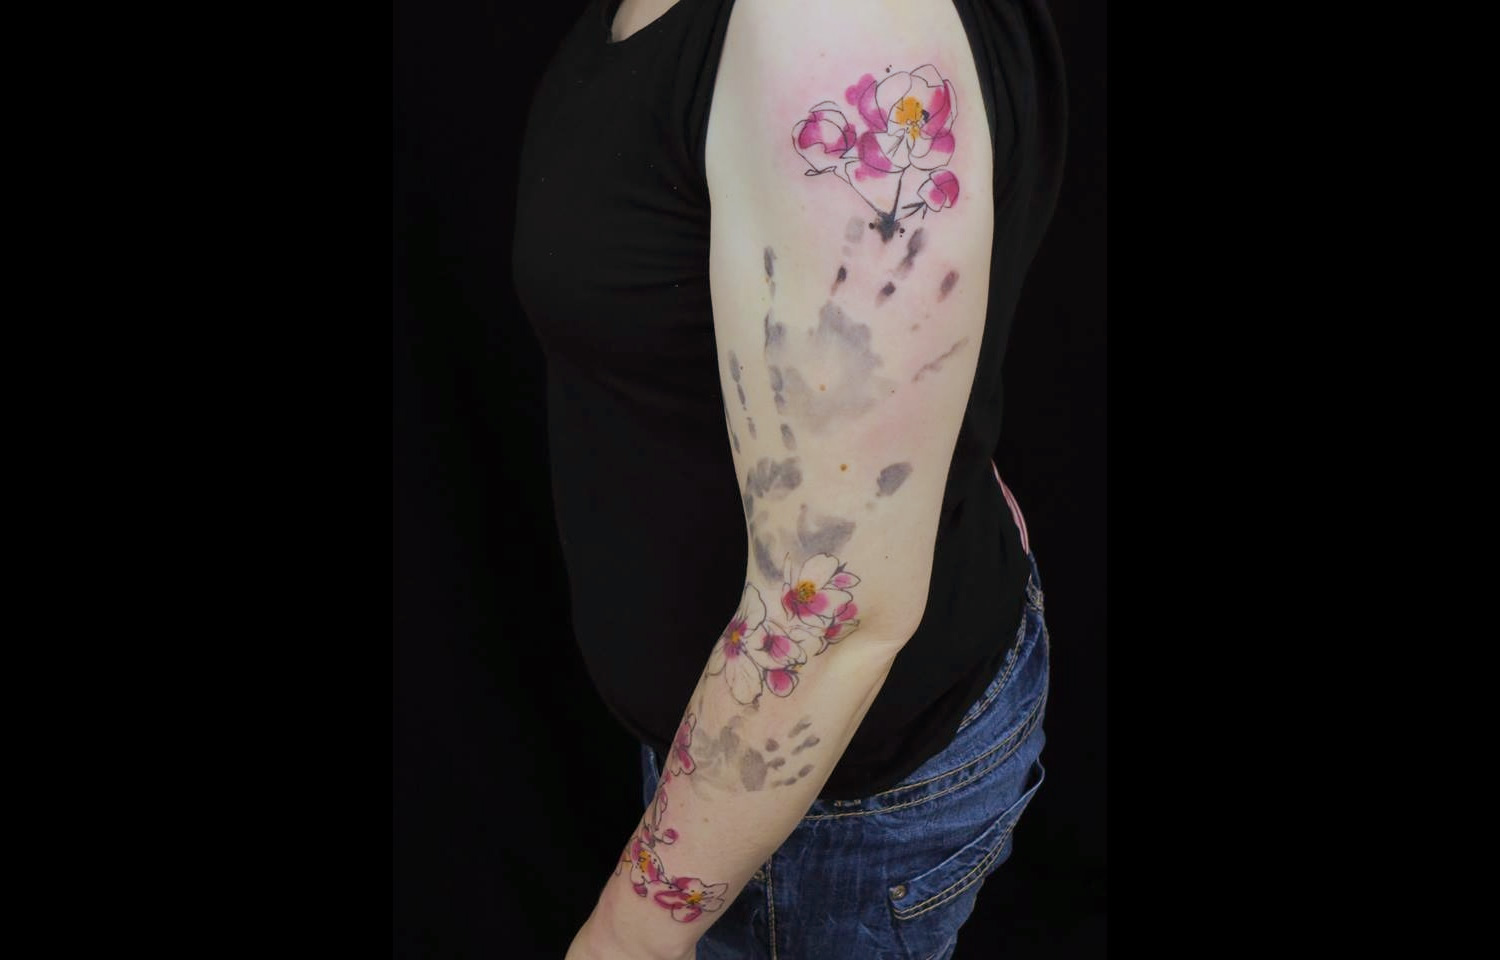 hand print and flowers tattoo by Sara Rosenbaum.